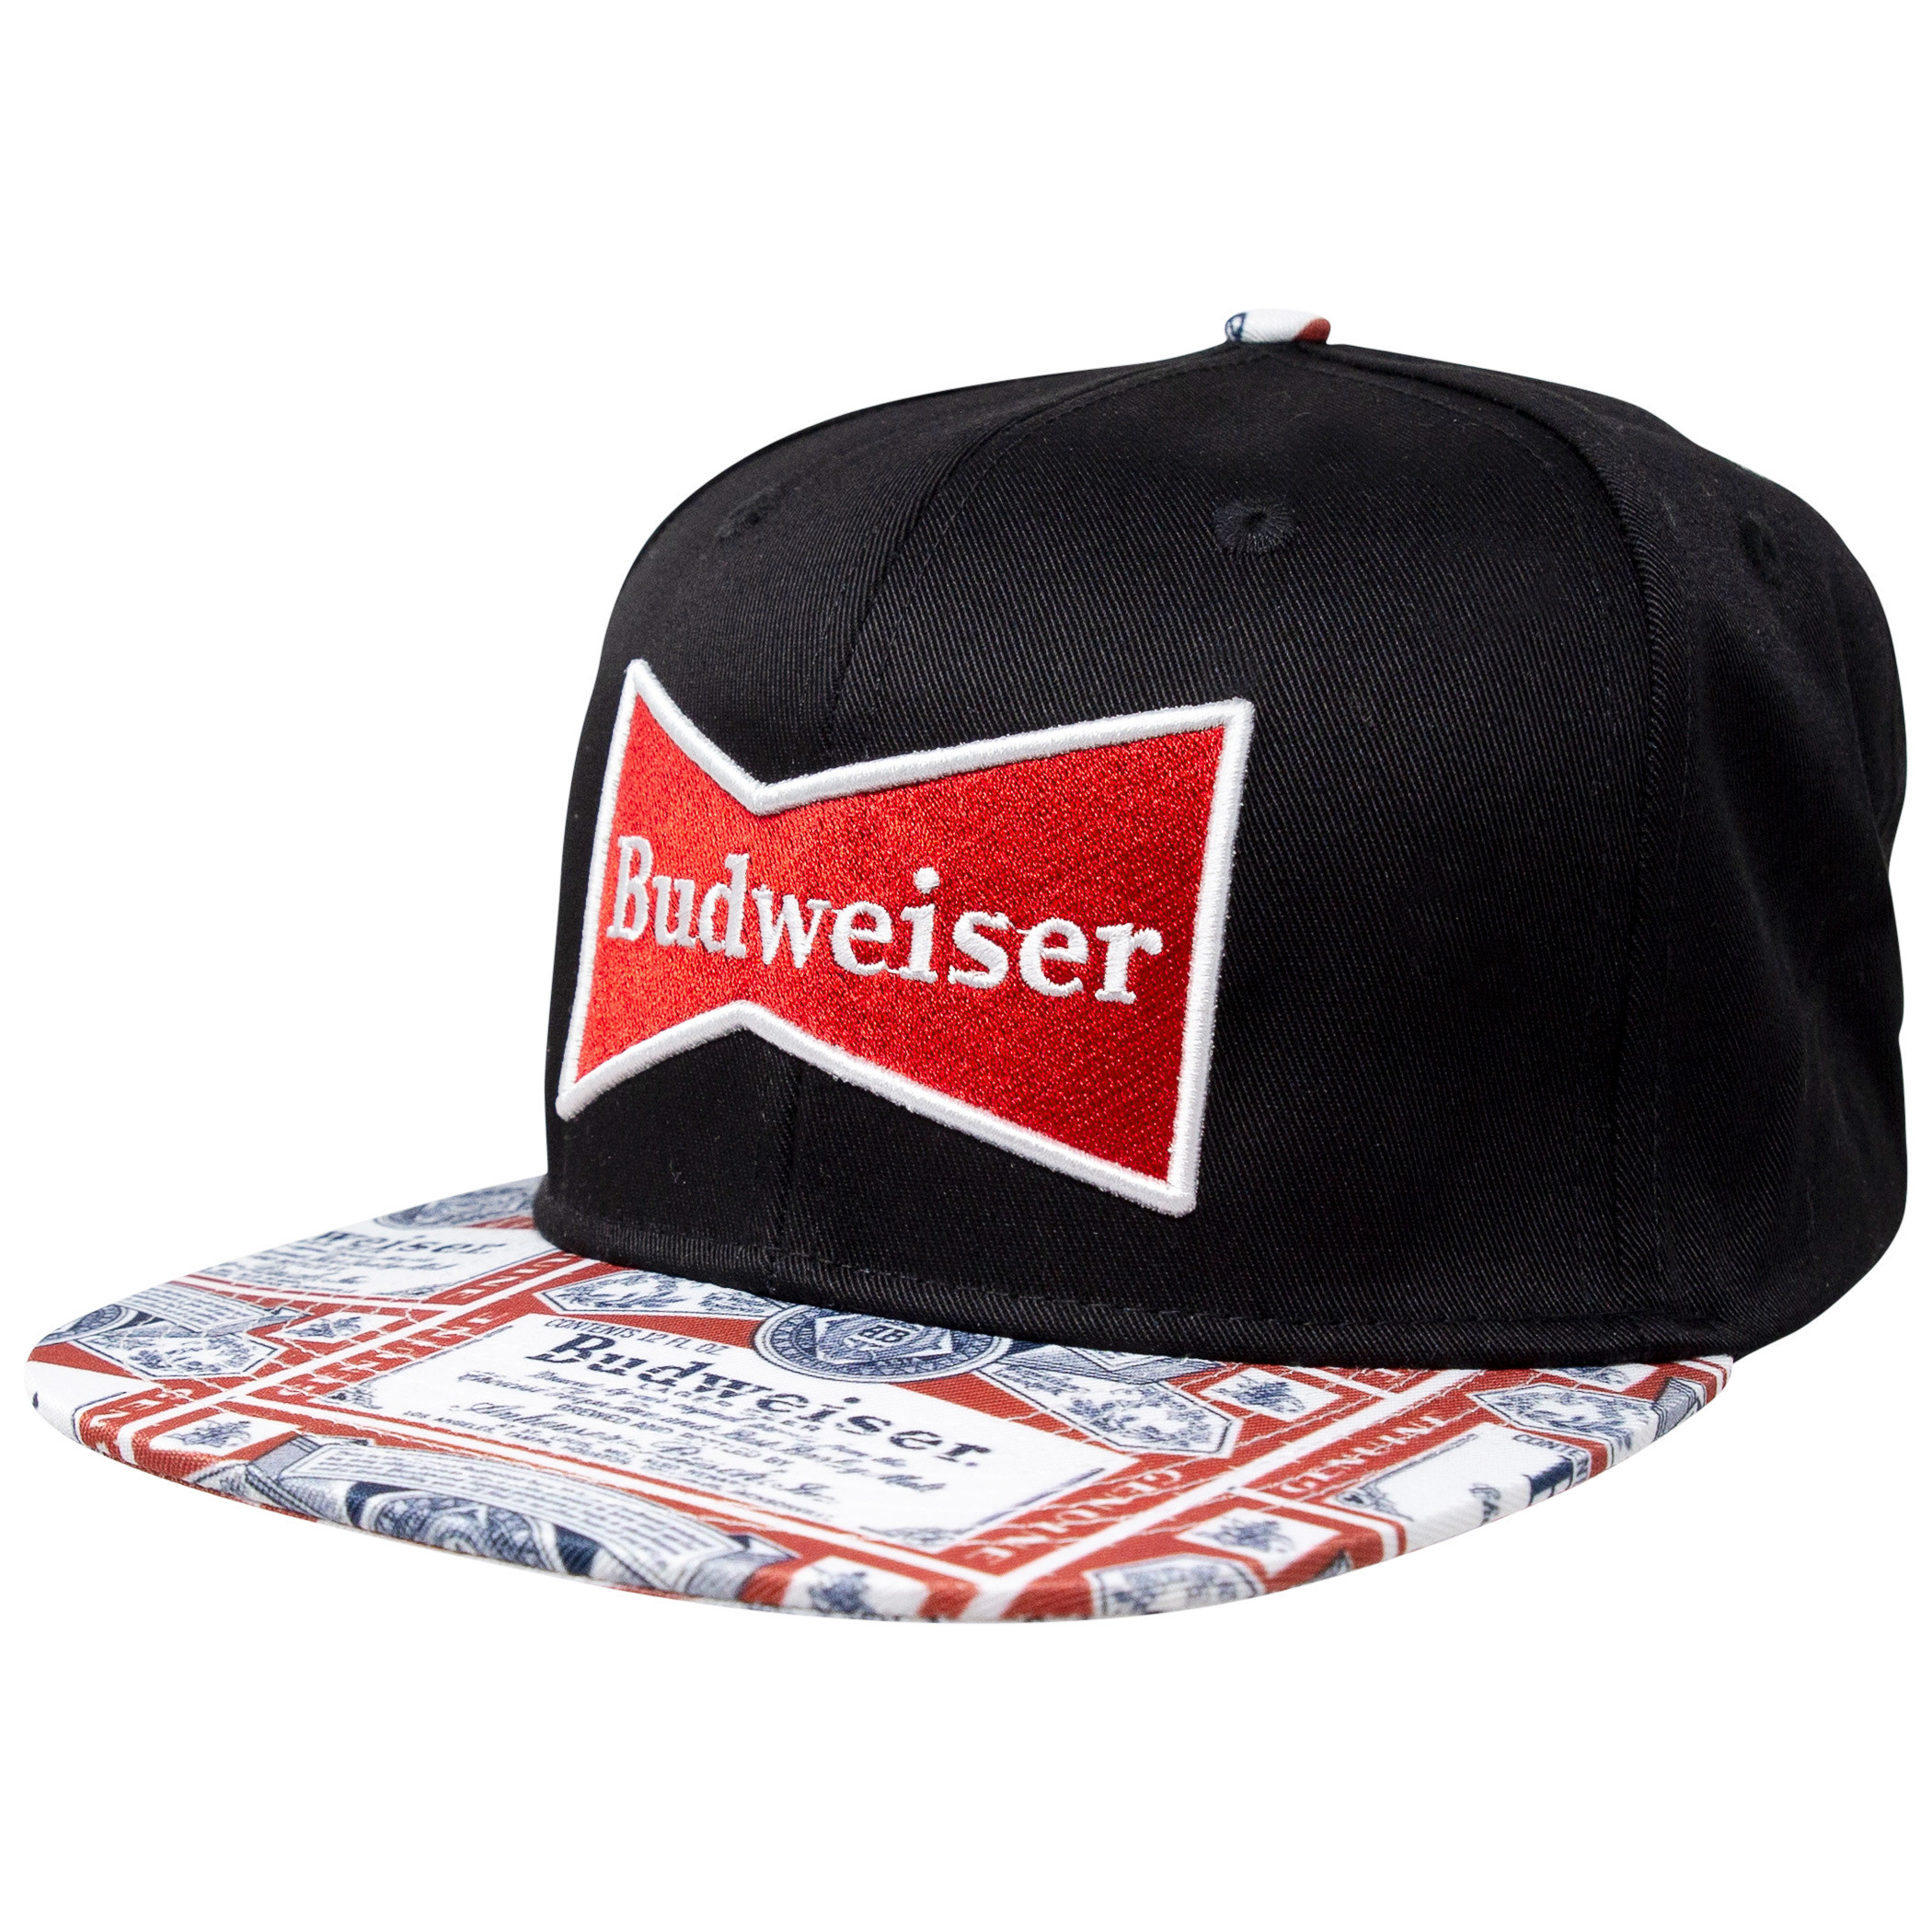 Budweiser Beer Label Brim Adjustable Snapback Hat